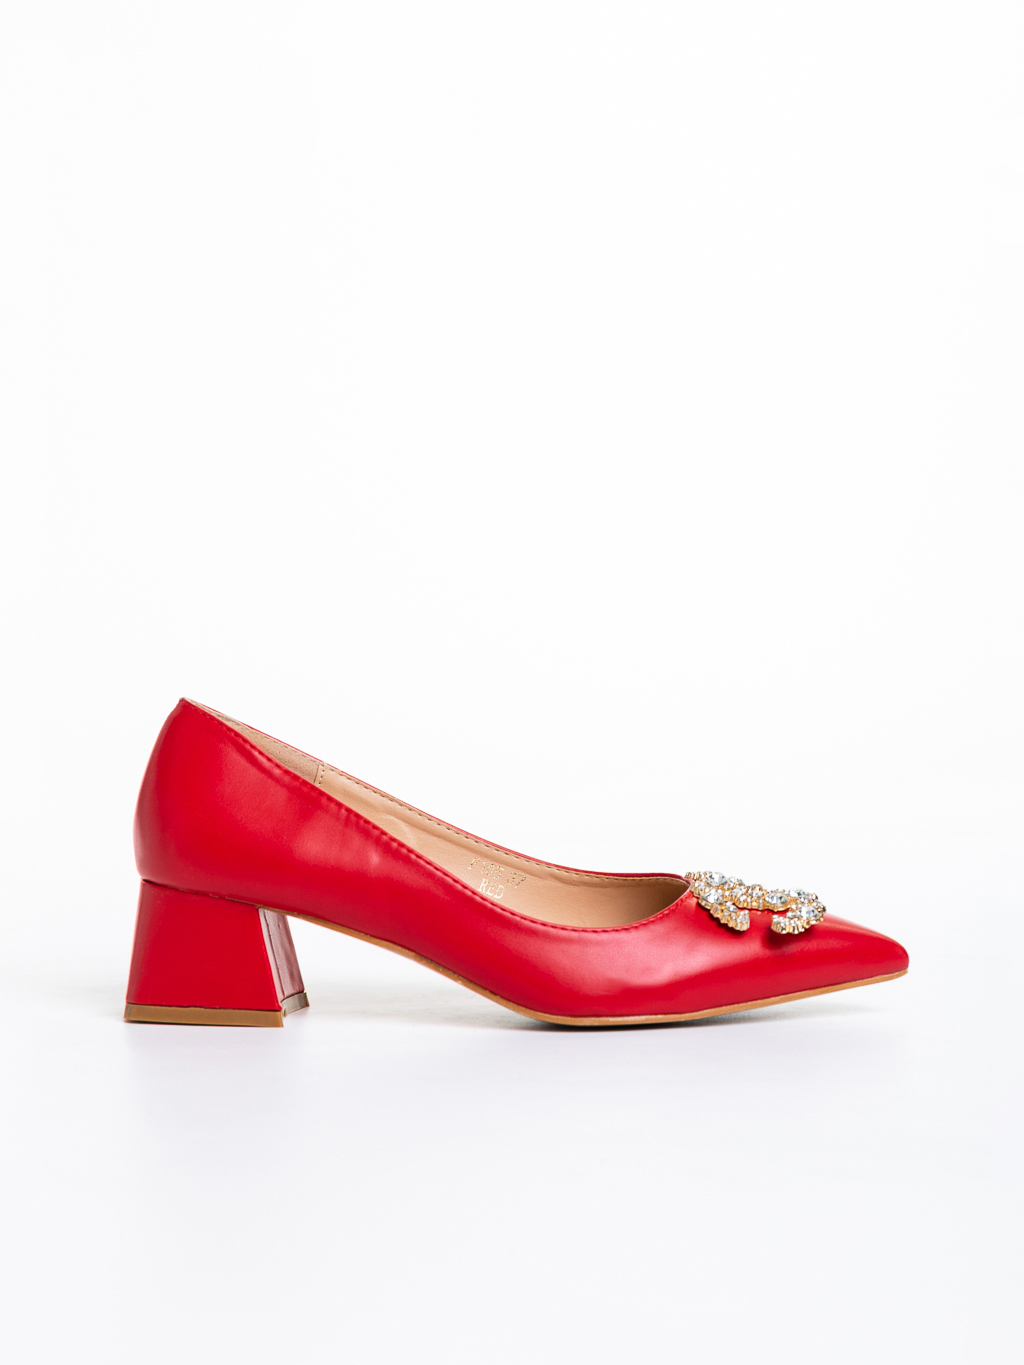 Nicolina piros női cipő sarokkal, műbőrből készült, 5 - Kalapod.hu